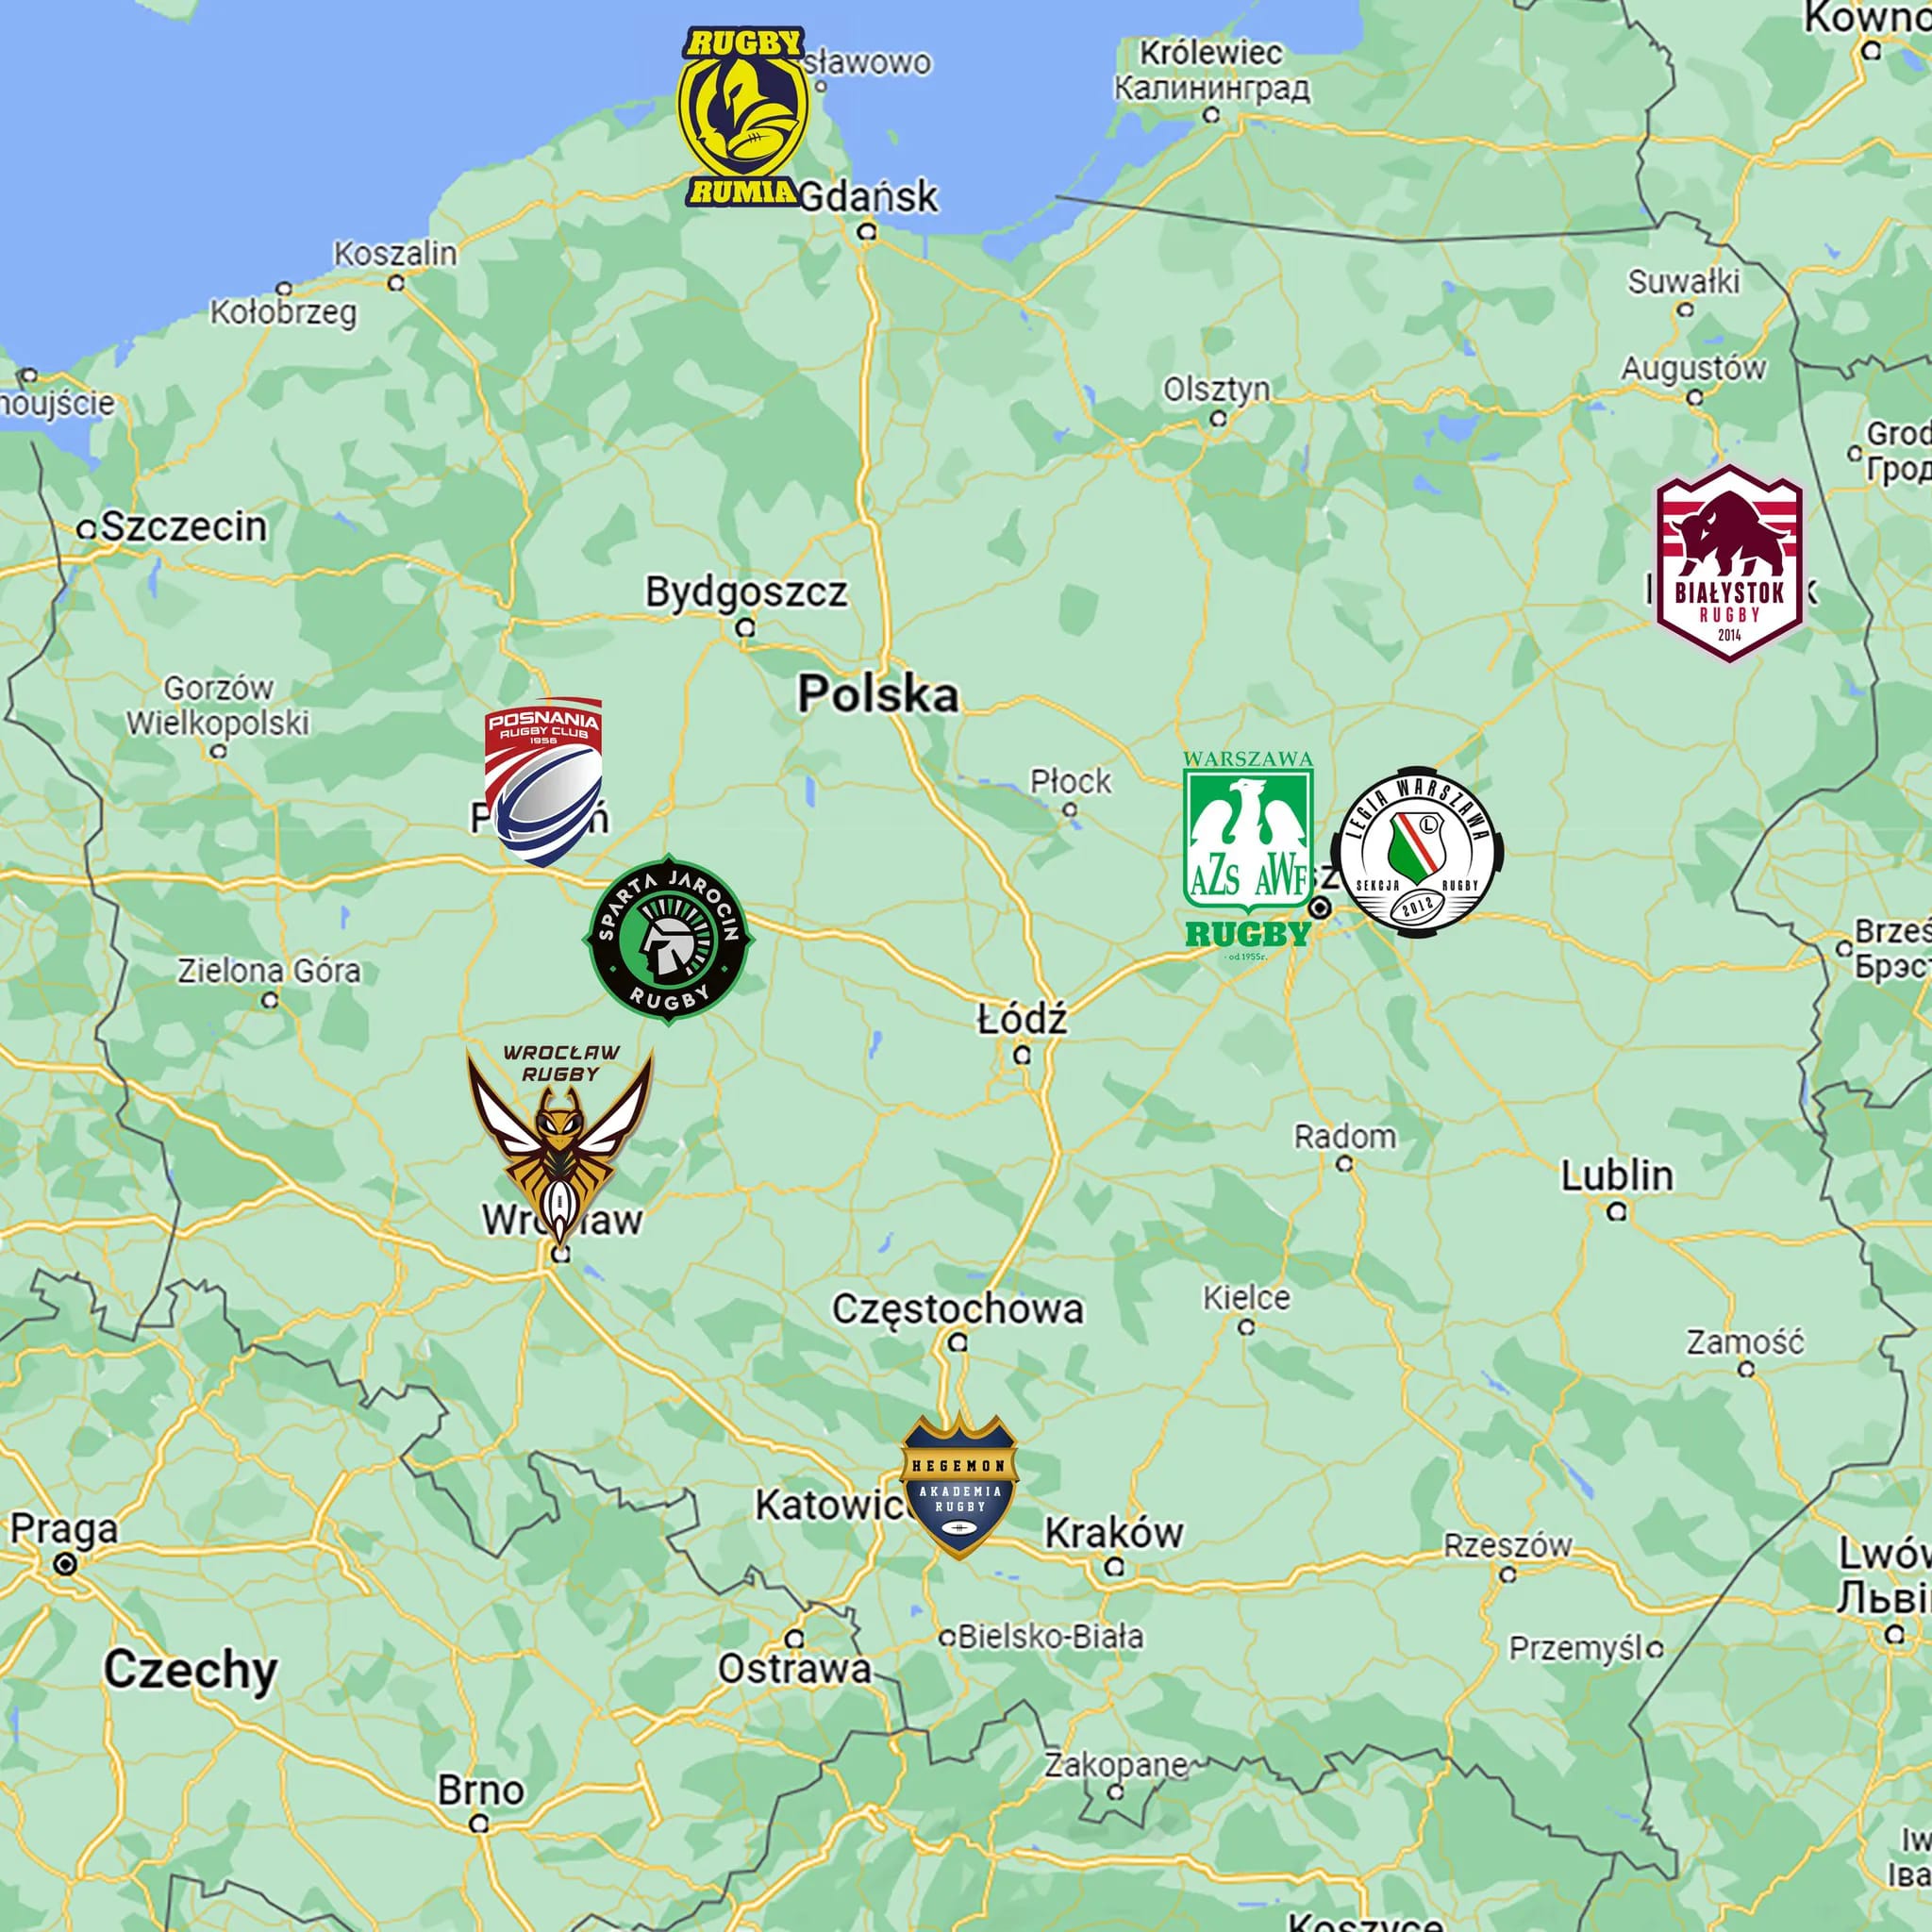 Rozmieszczenie na mapie Polski drużyn biorących udział w I Lidze Rugby